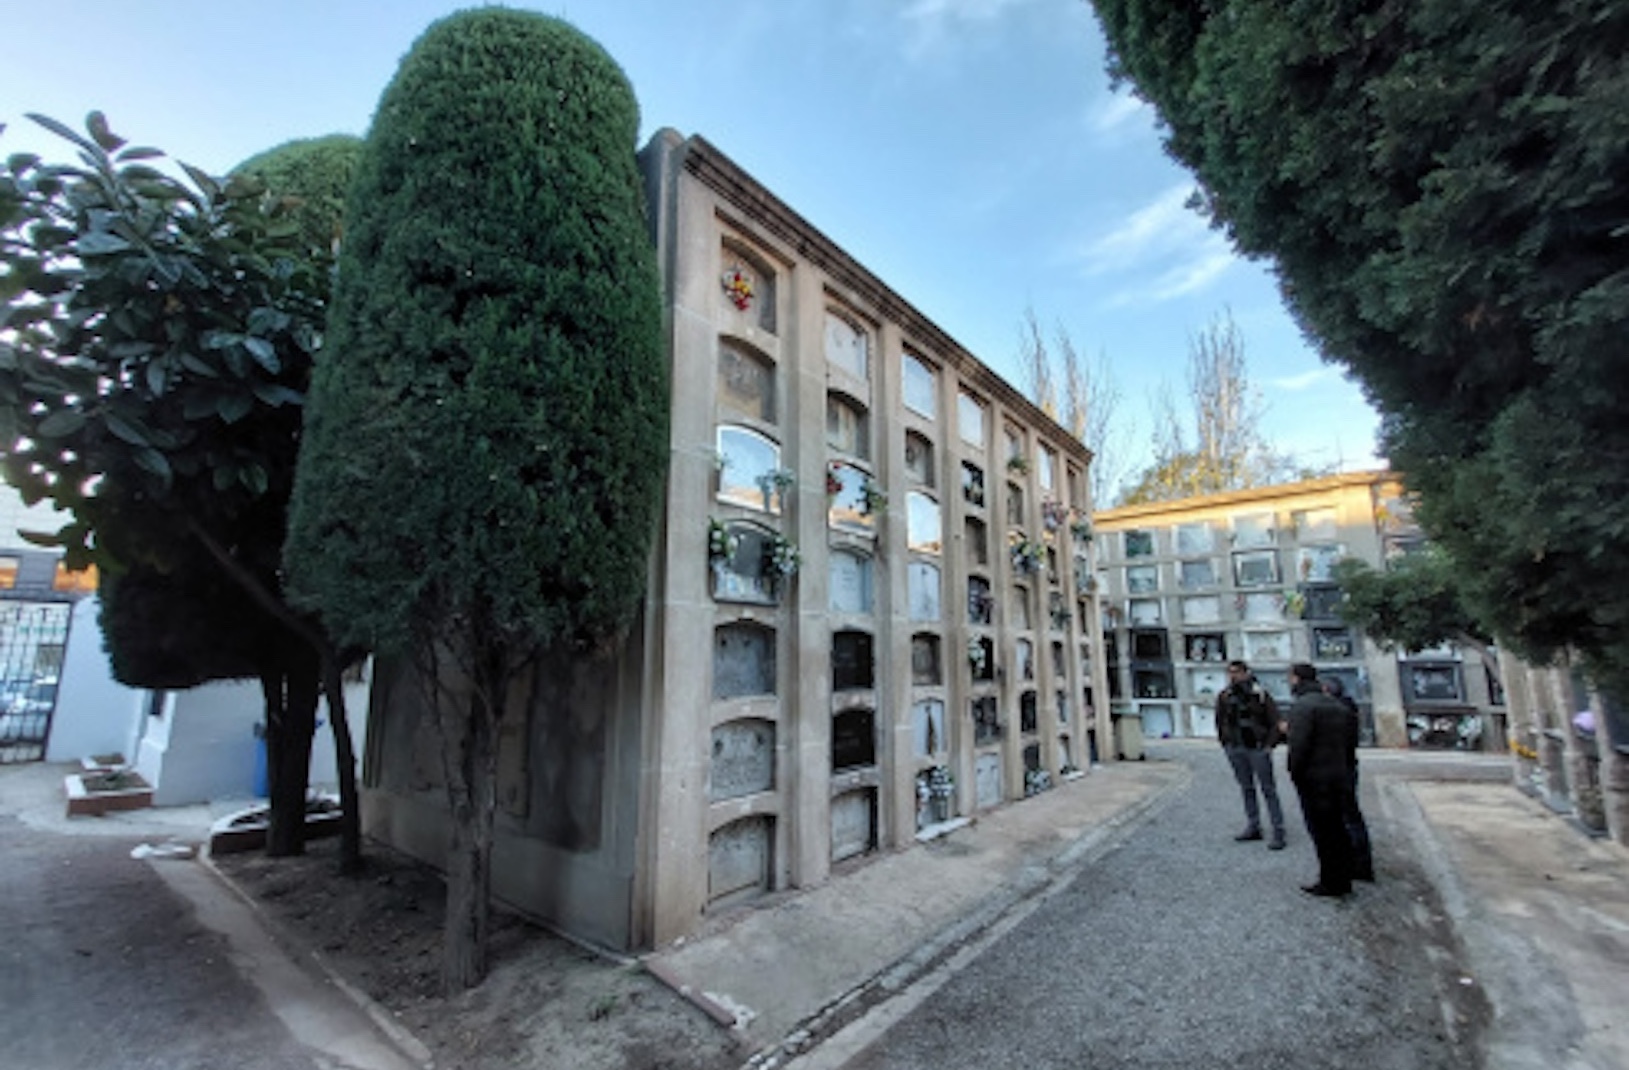 En los próximos días dará comienzo la rehabilitación del Cementerio viejo de El Prat de Llobregat